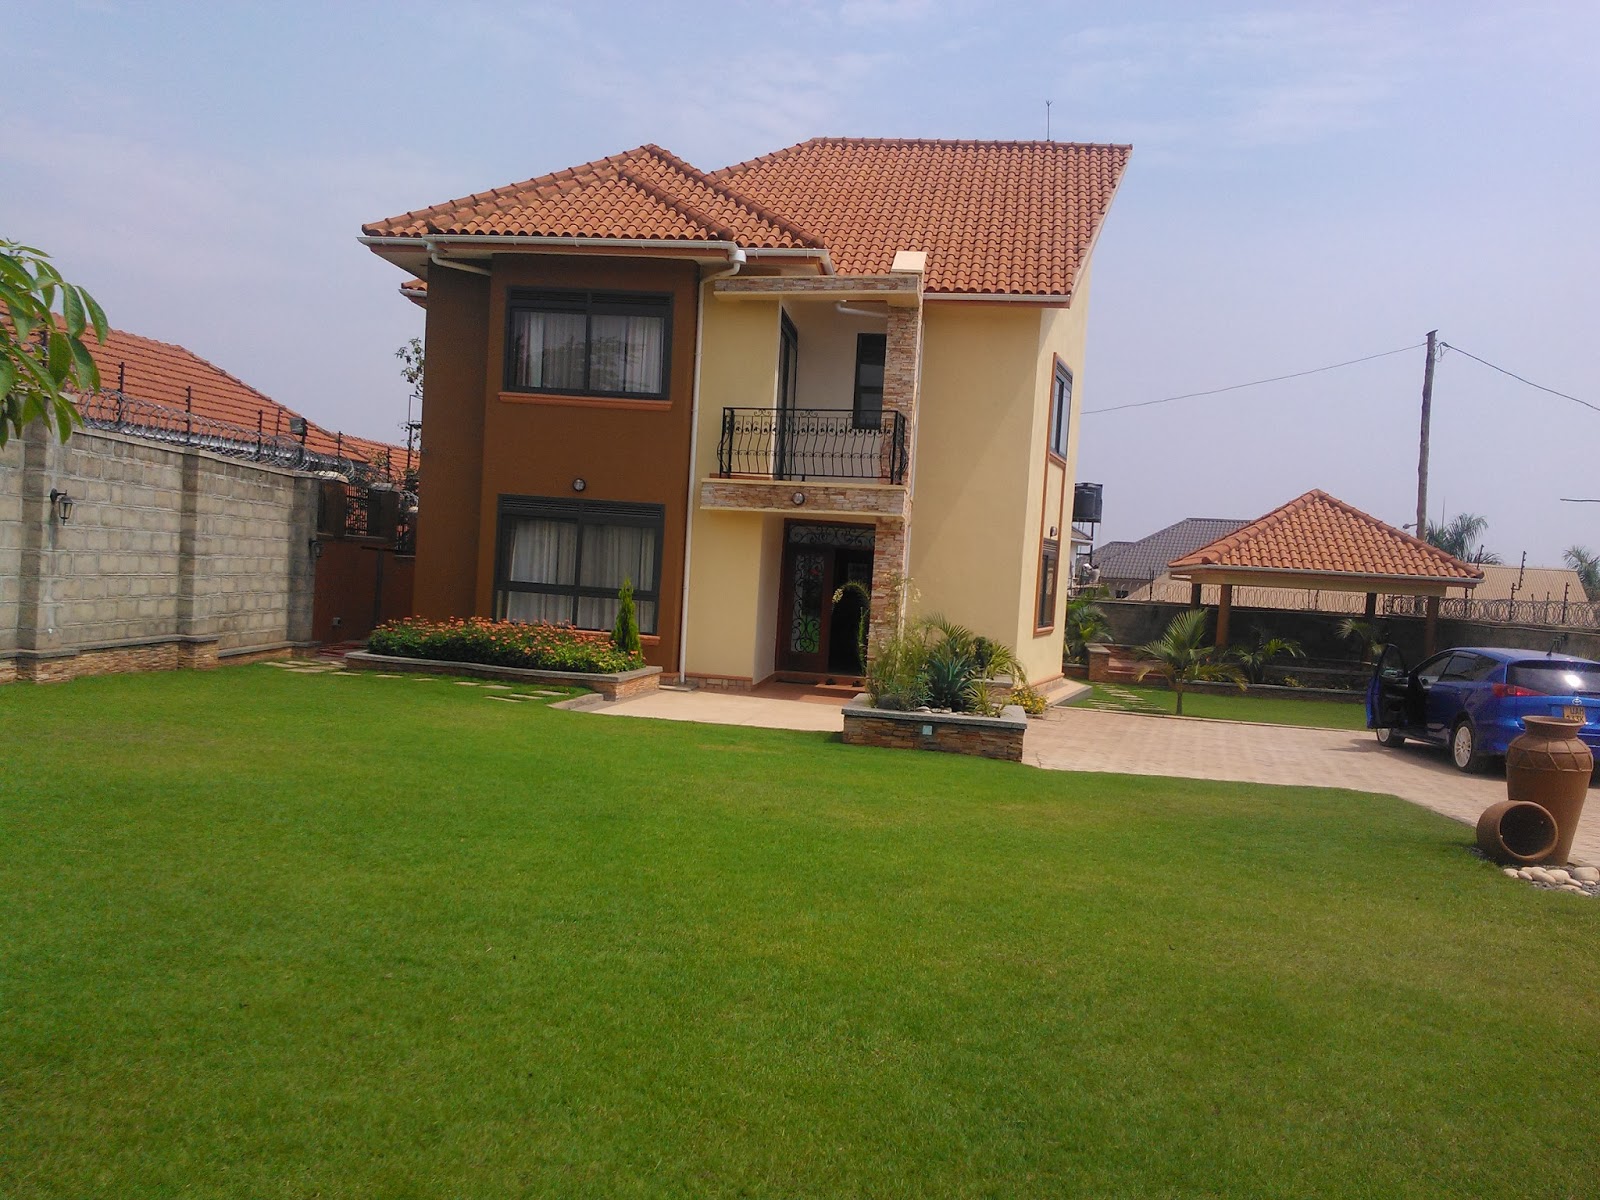 HOUSES FOR SALE KAMPALA, UGANDA HOUSE FOR SALE NALYA, KAMPALA